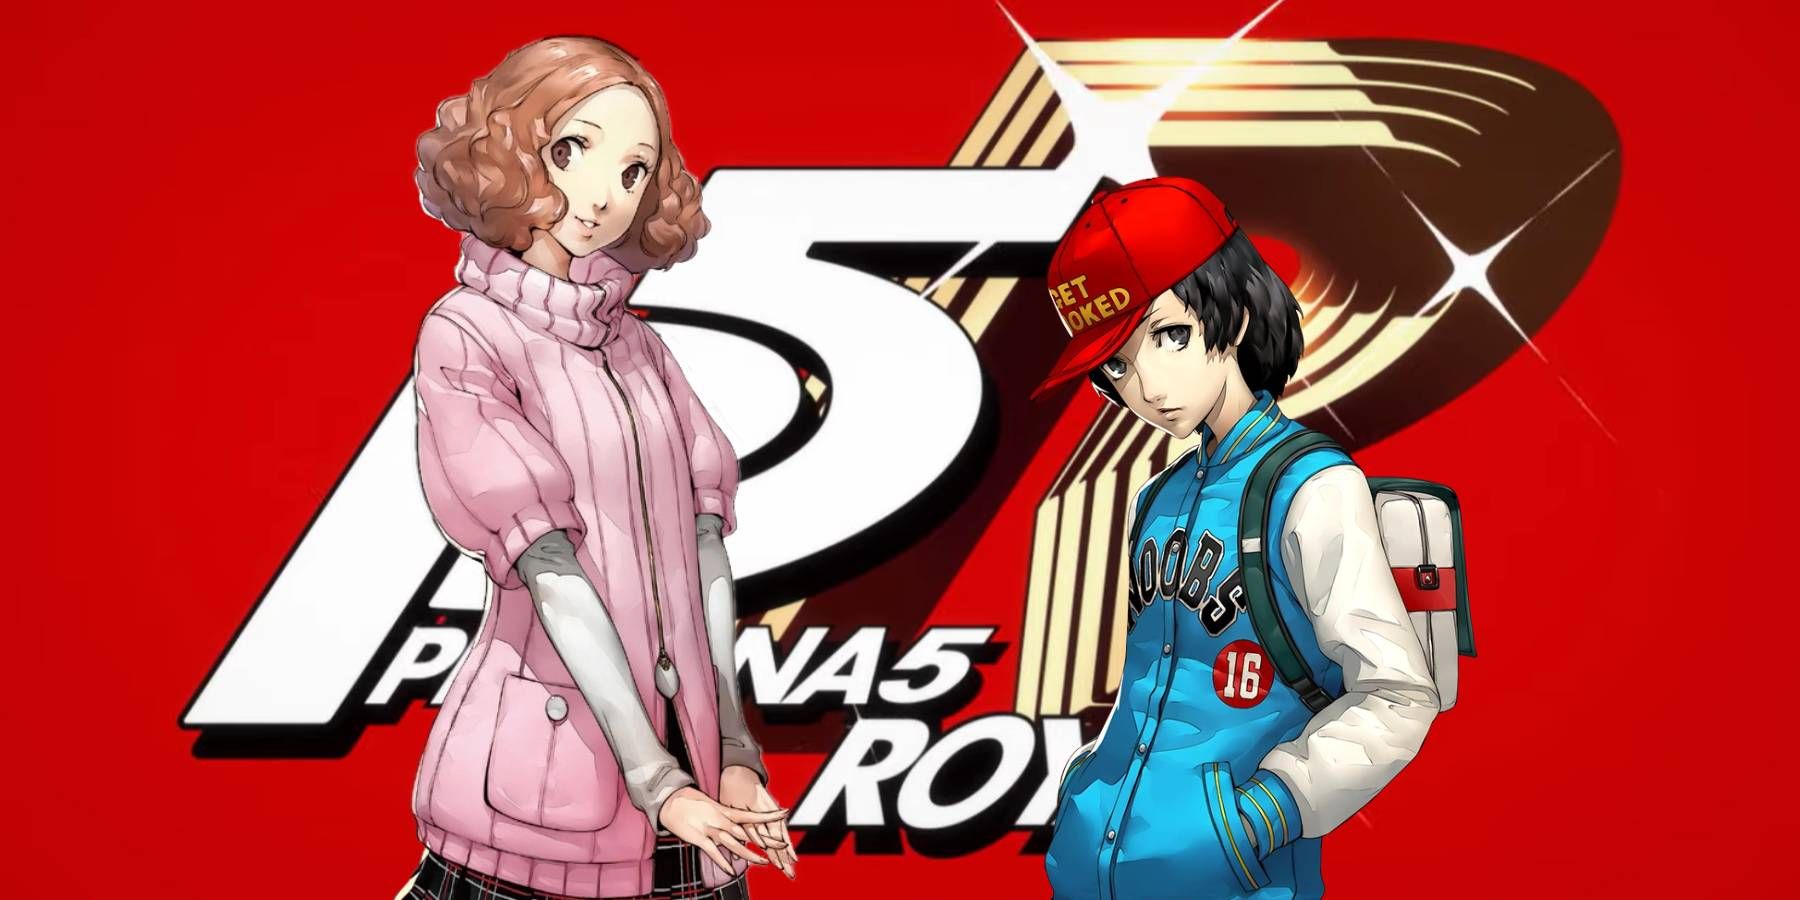 Haru e Shinya em frente ao logotipo do Persona 5 Royal na introdução do jogo